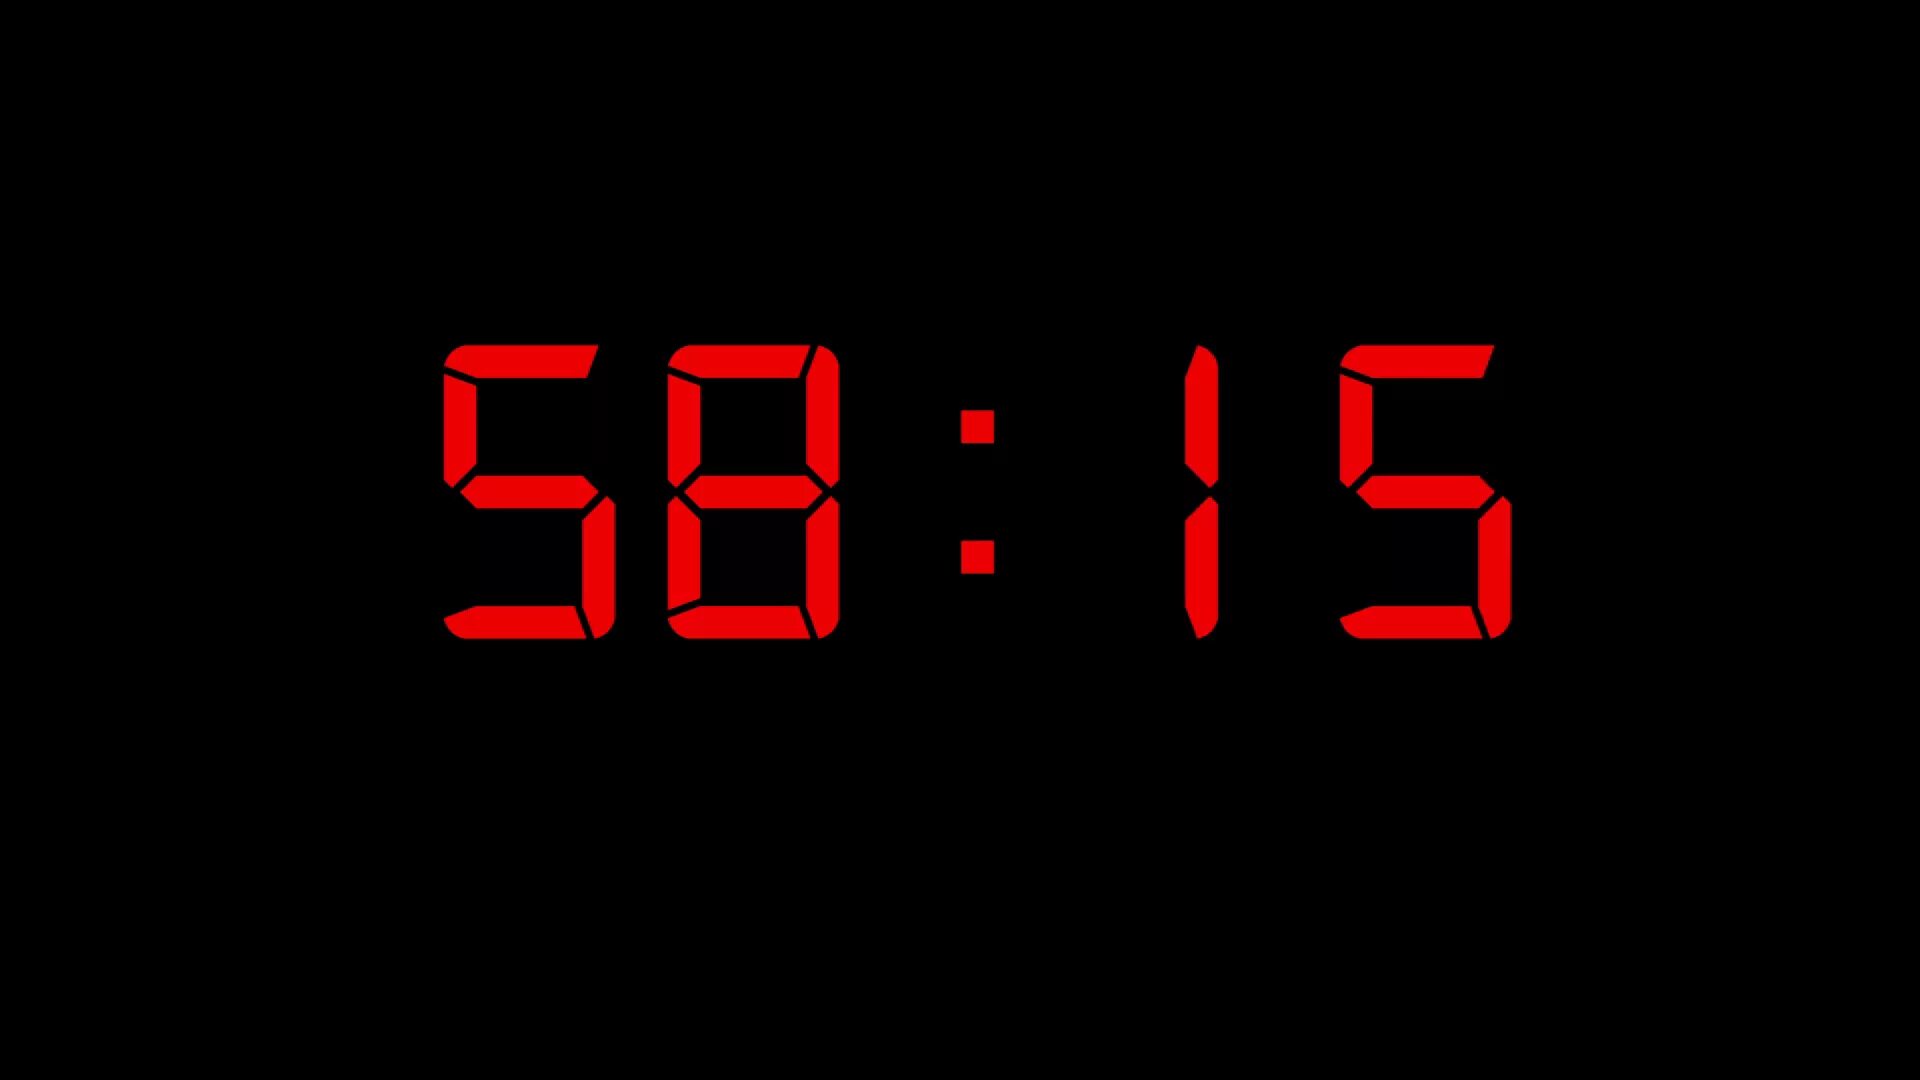 Таймер 1 час 2. Таймер Countdown. Электронные часы на черном фоне. Часы 1 час. Таймер на один час.